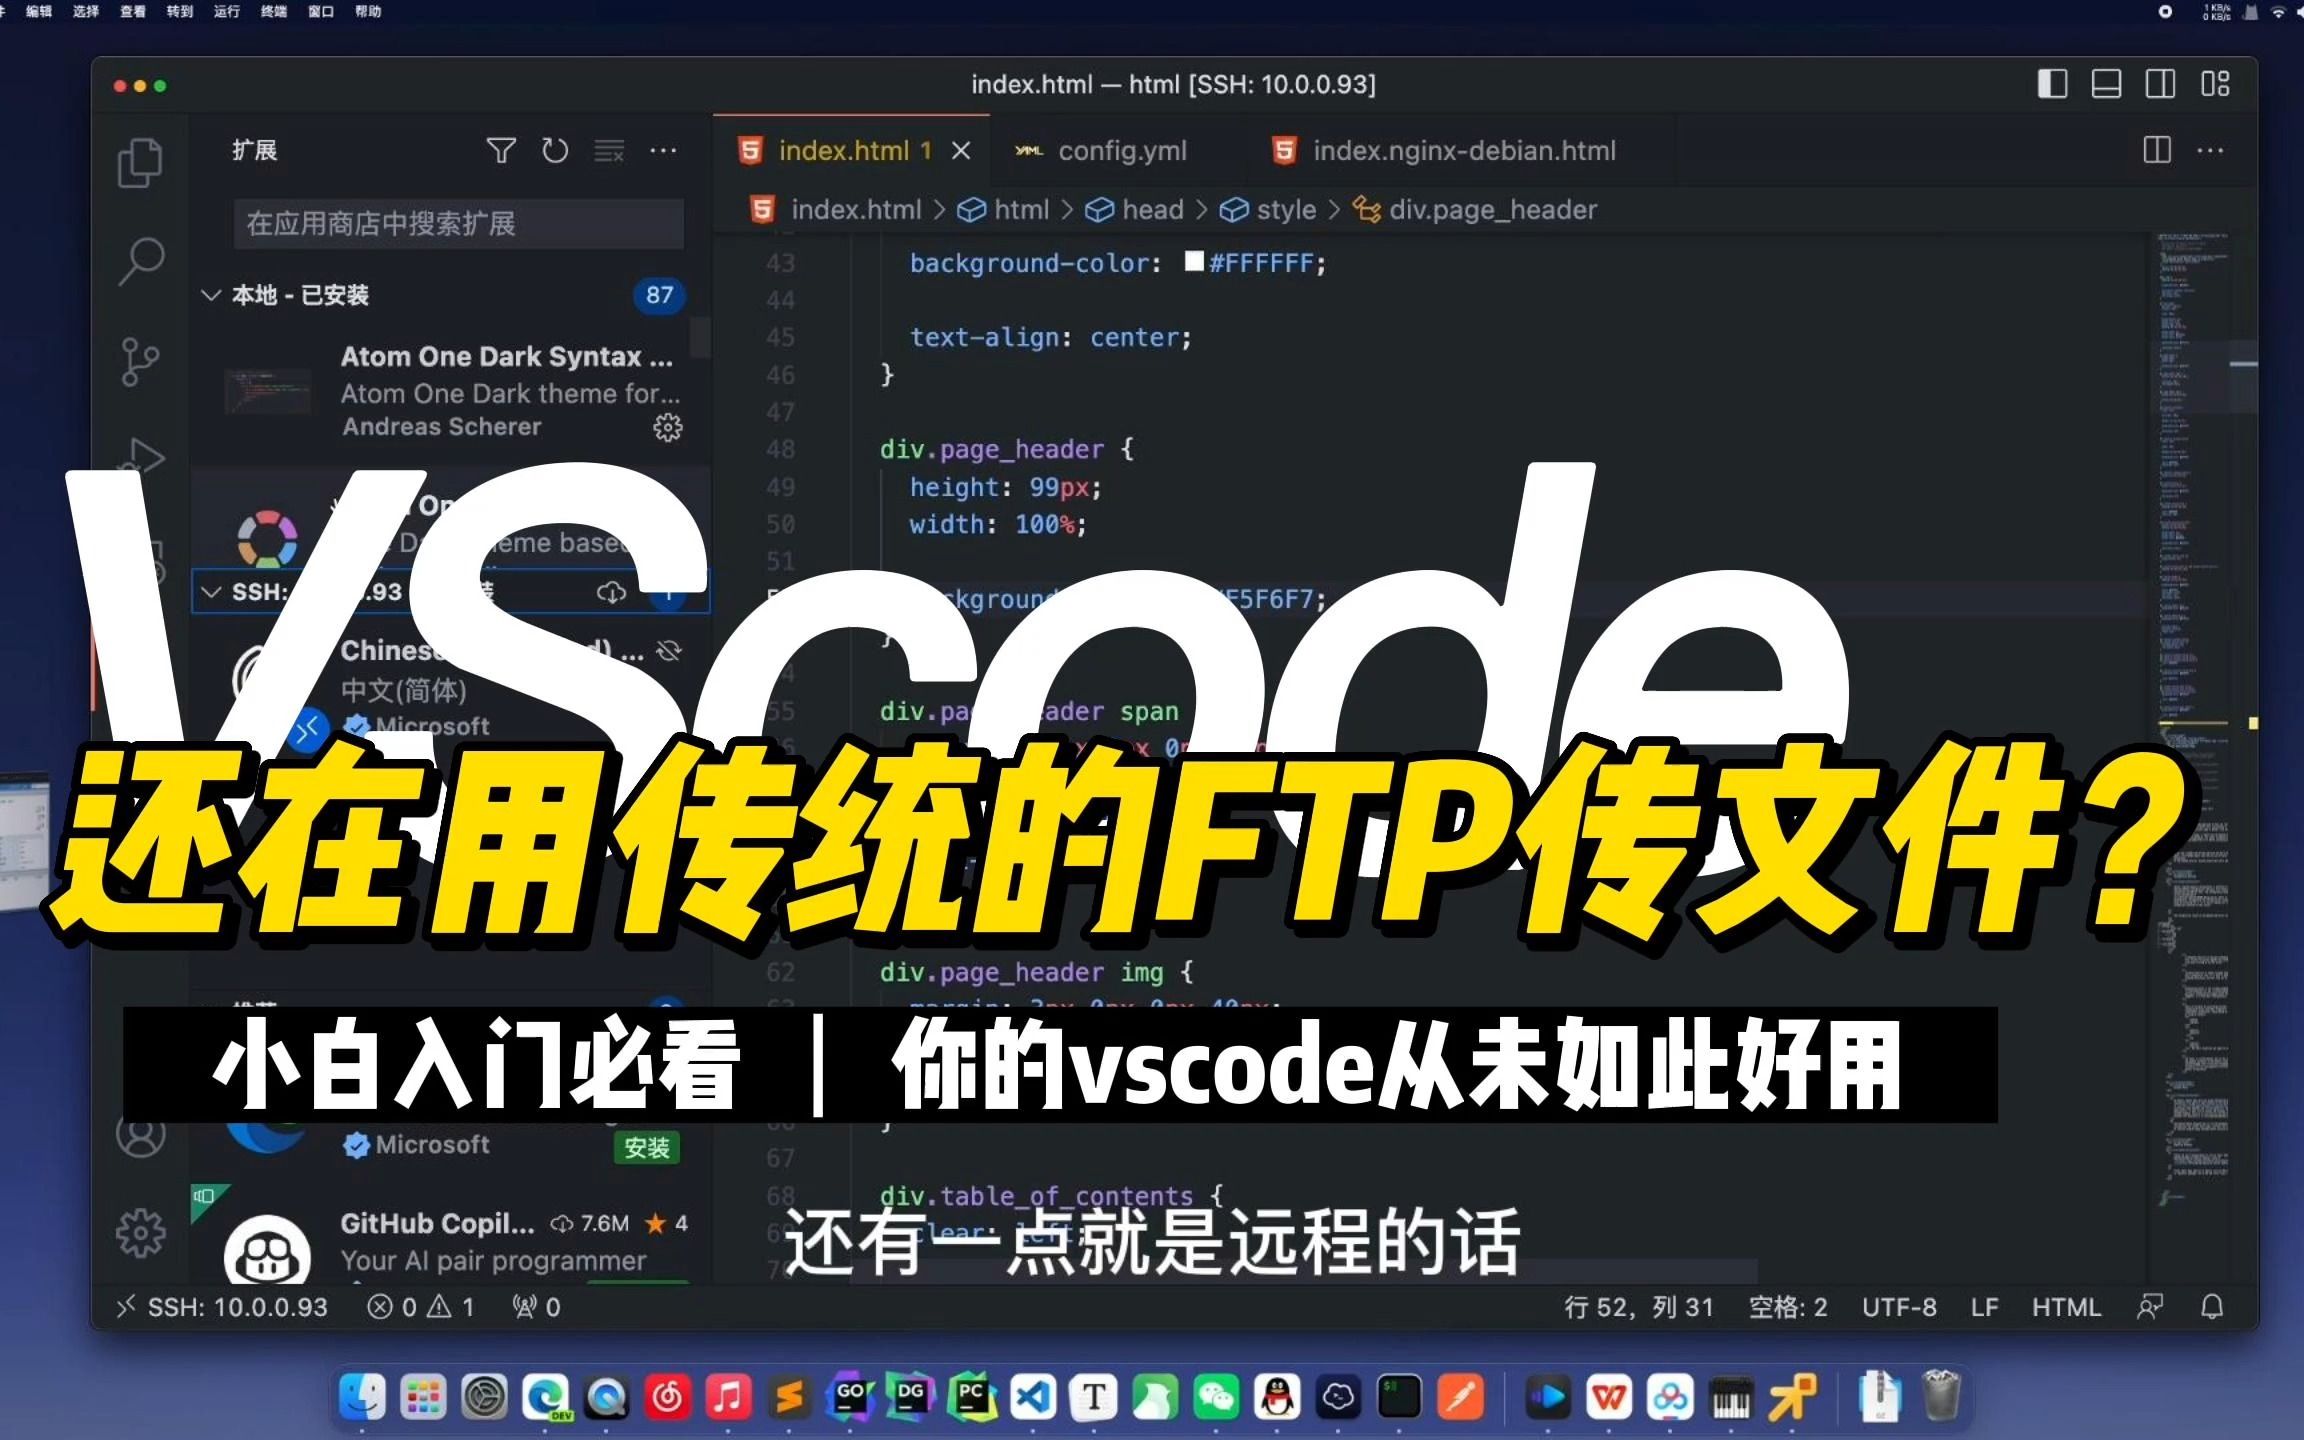 【工具分享】Vscode server，还在用传统的FTP传输？